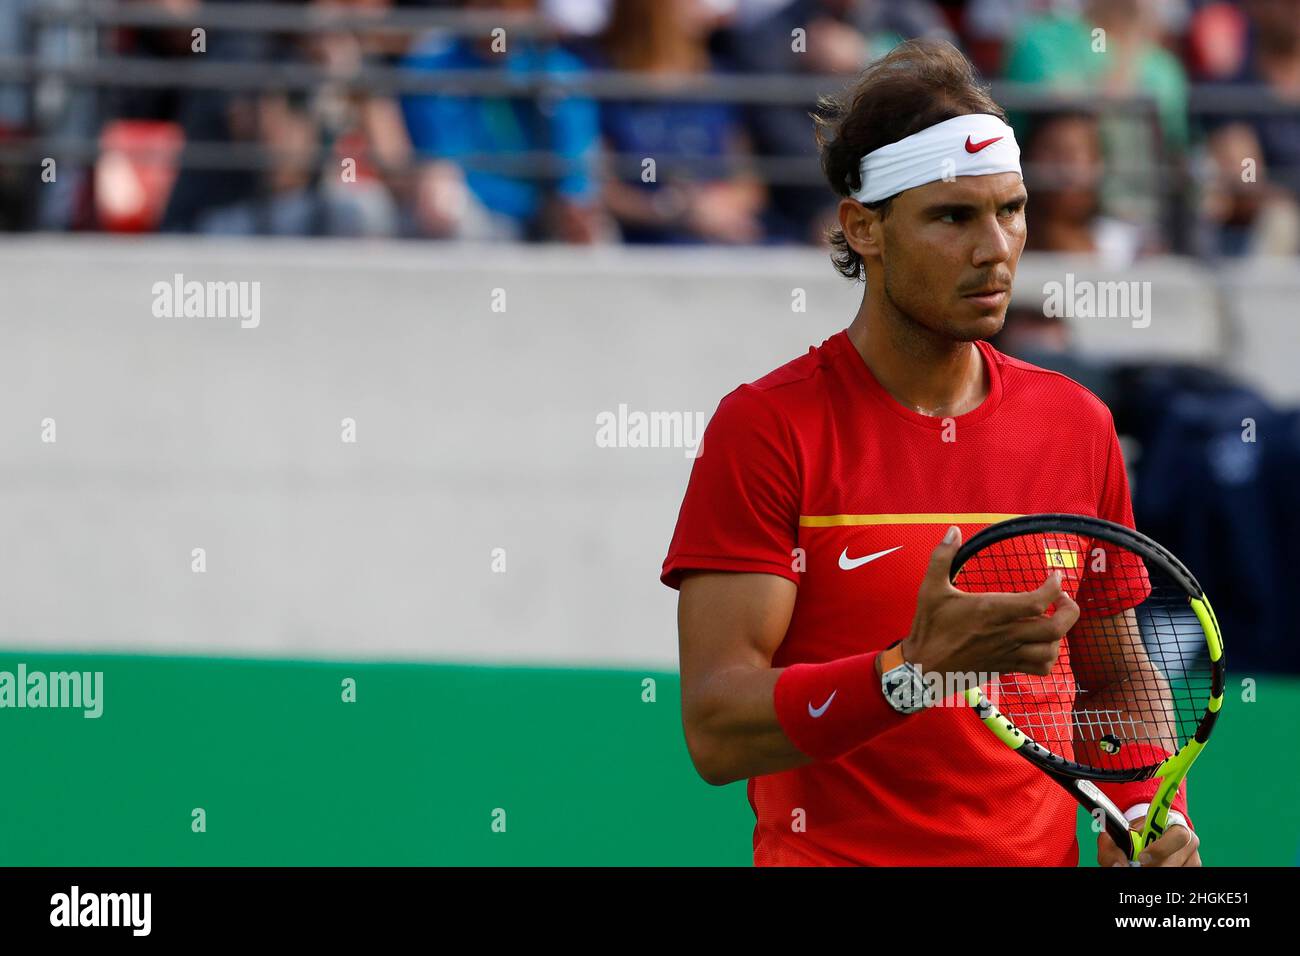 Rafael Nadal, tennista spagnolo, che gareggia ai Giochi Olimpici estivi di Rio 2016. Atleta spagnolo in campo, ex numero uno al mondo ATP classifiche Foto Stock